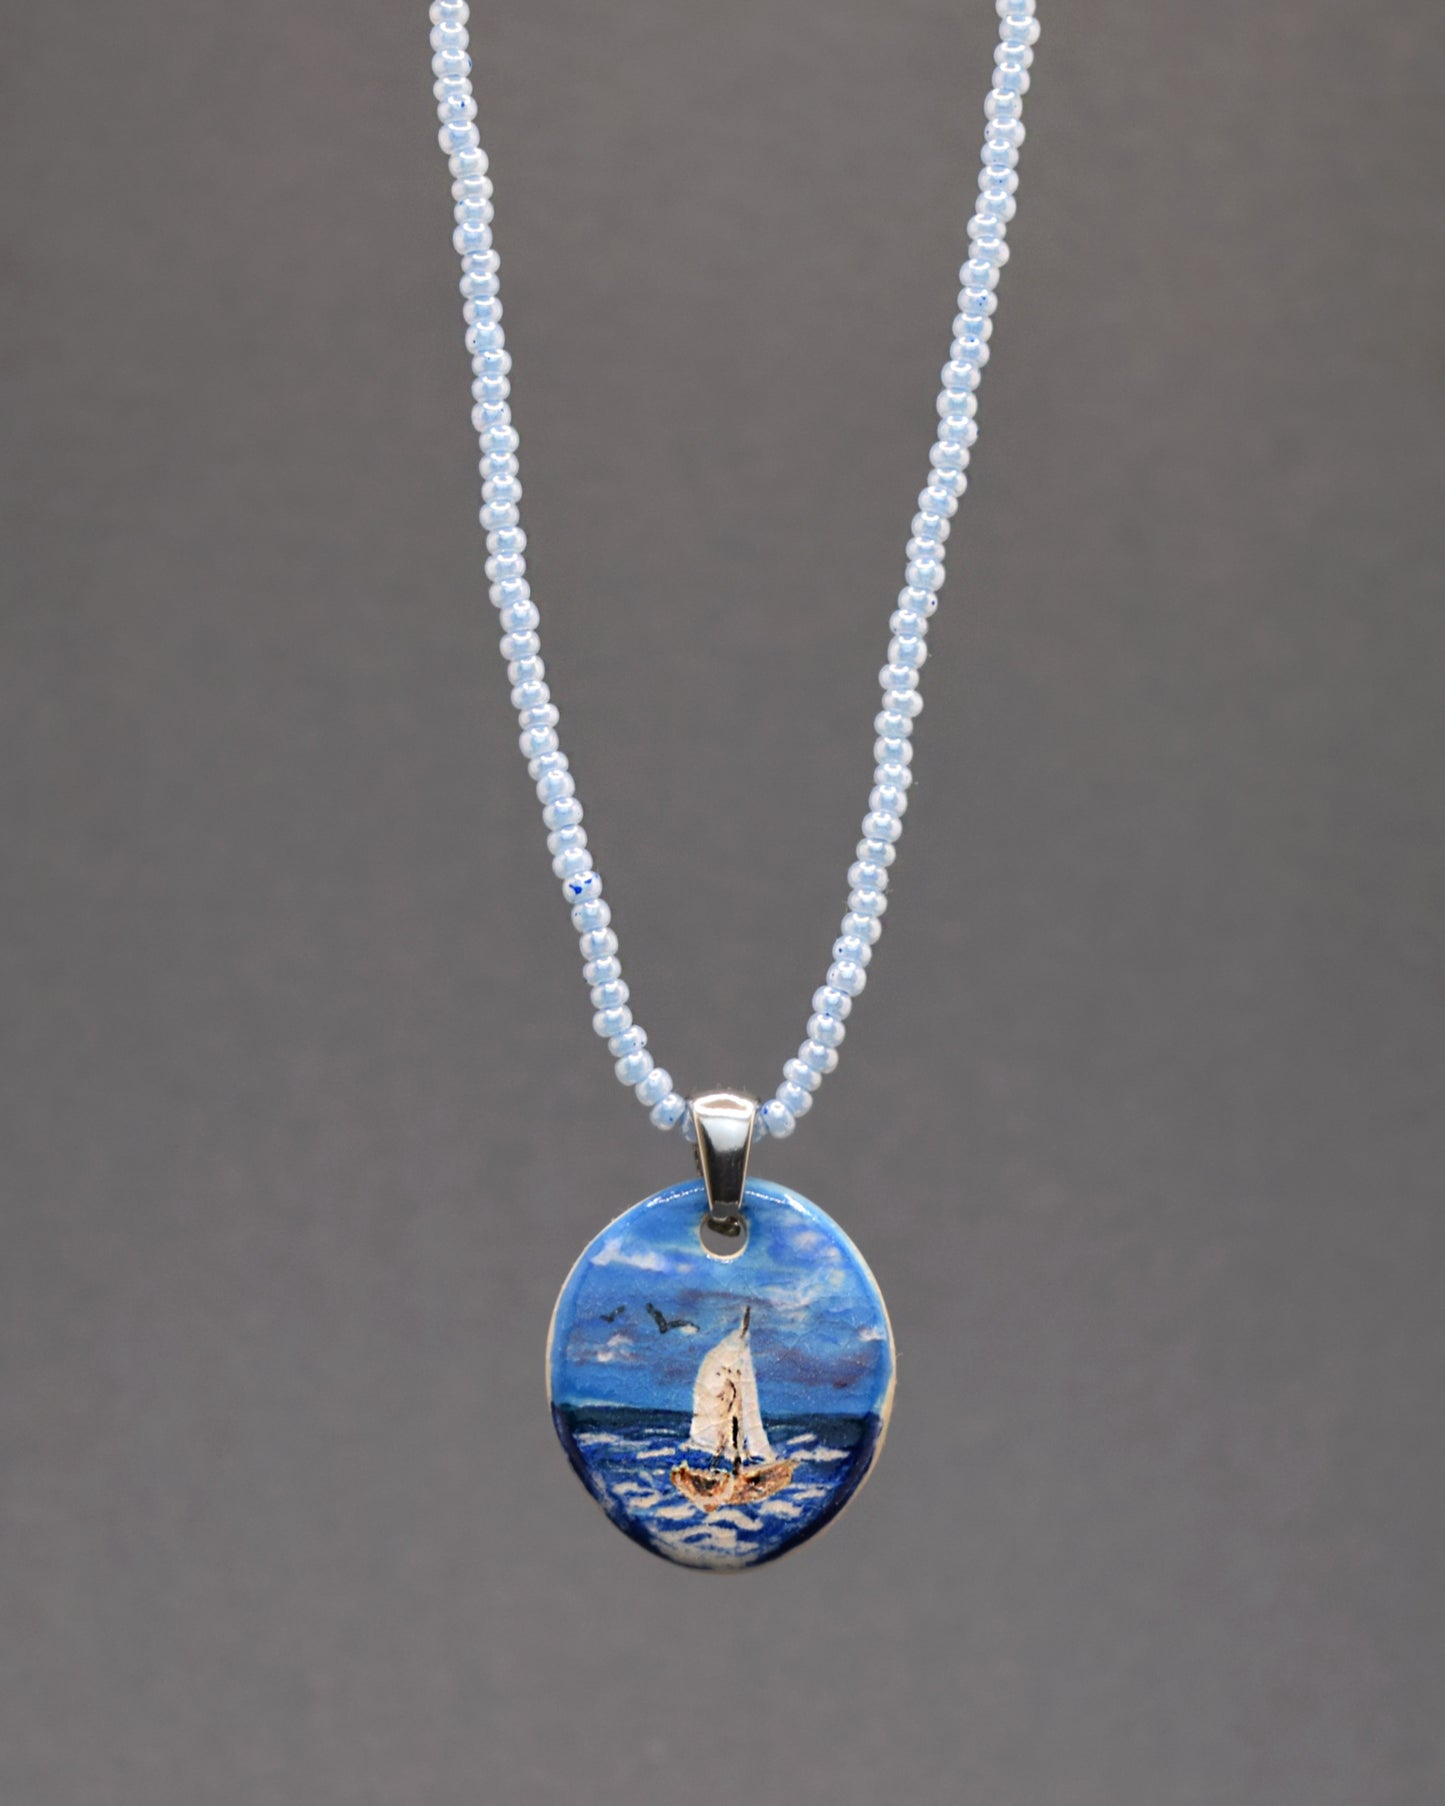 Delicadeza em azul! O nosso colar cativante apresenta um encantador pendente de cerâmica, retratando um Barco em Alto Mar, em perfeita harmonia com uma corrente de missangas de vidro azuis claras. Um toque refrescante e elegante para realçar o seu estilo.